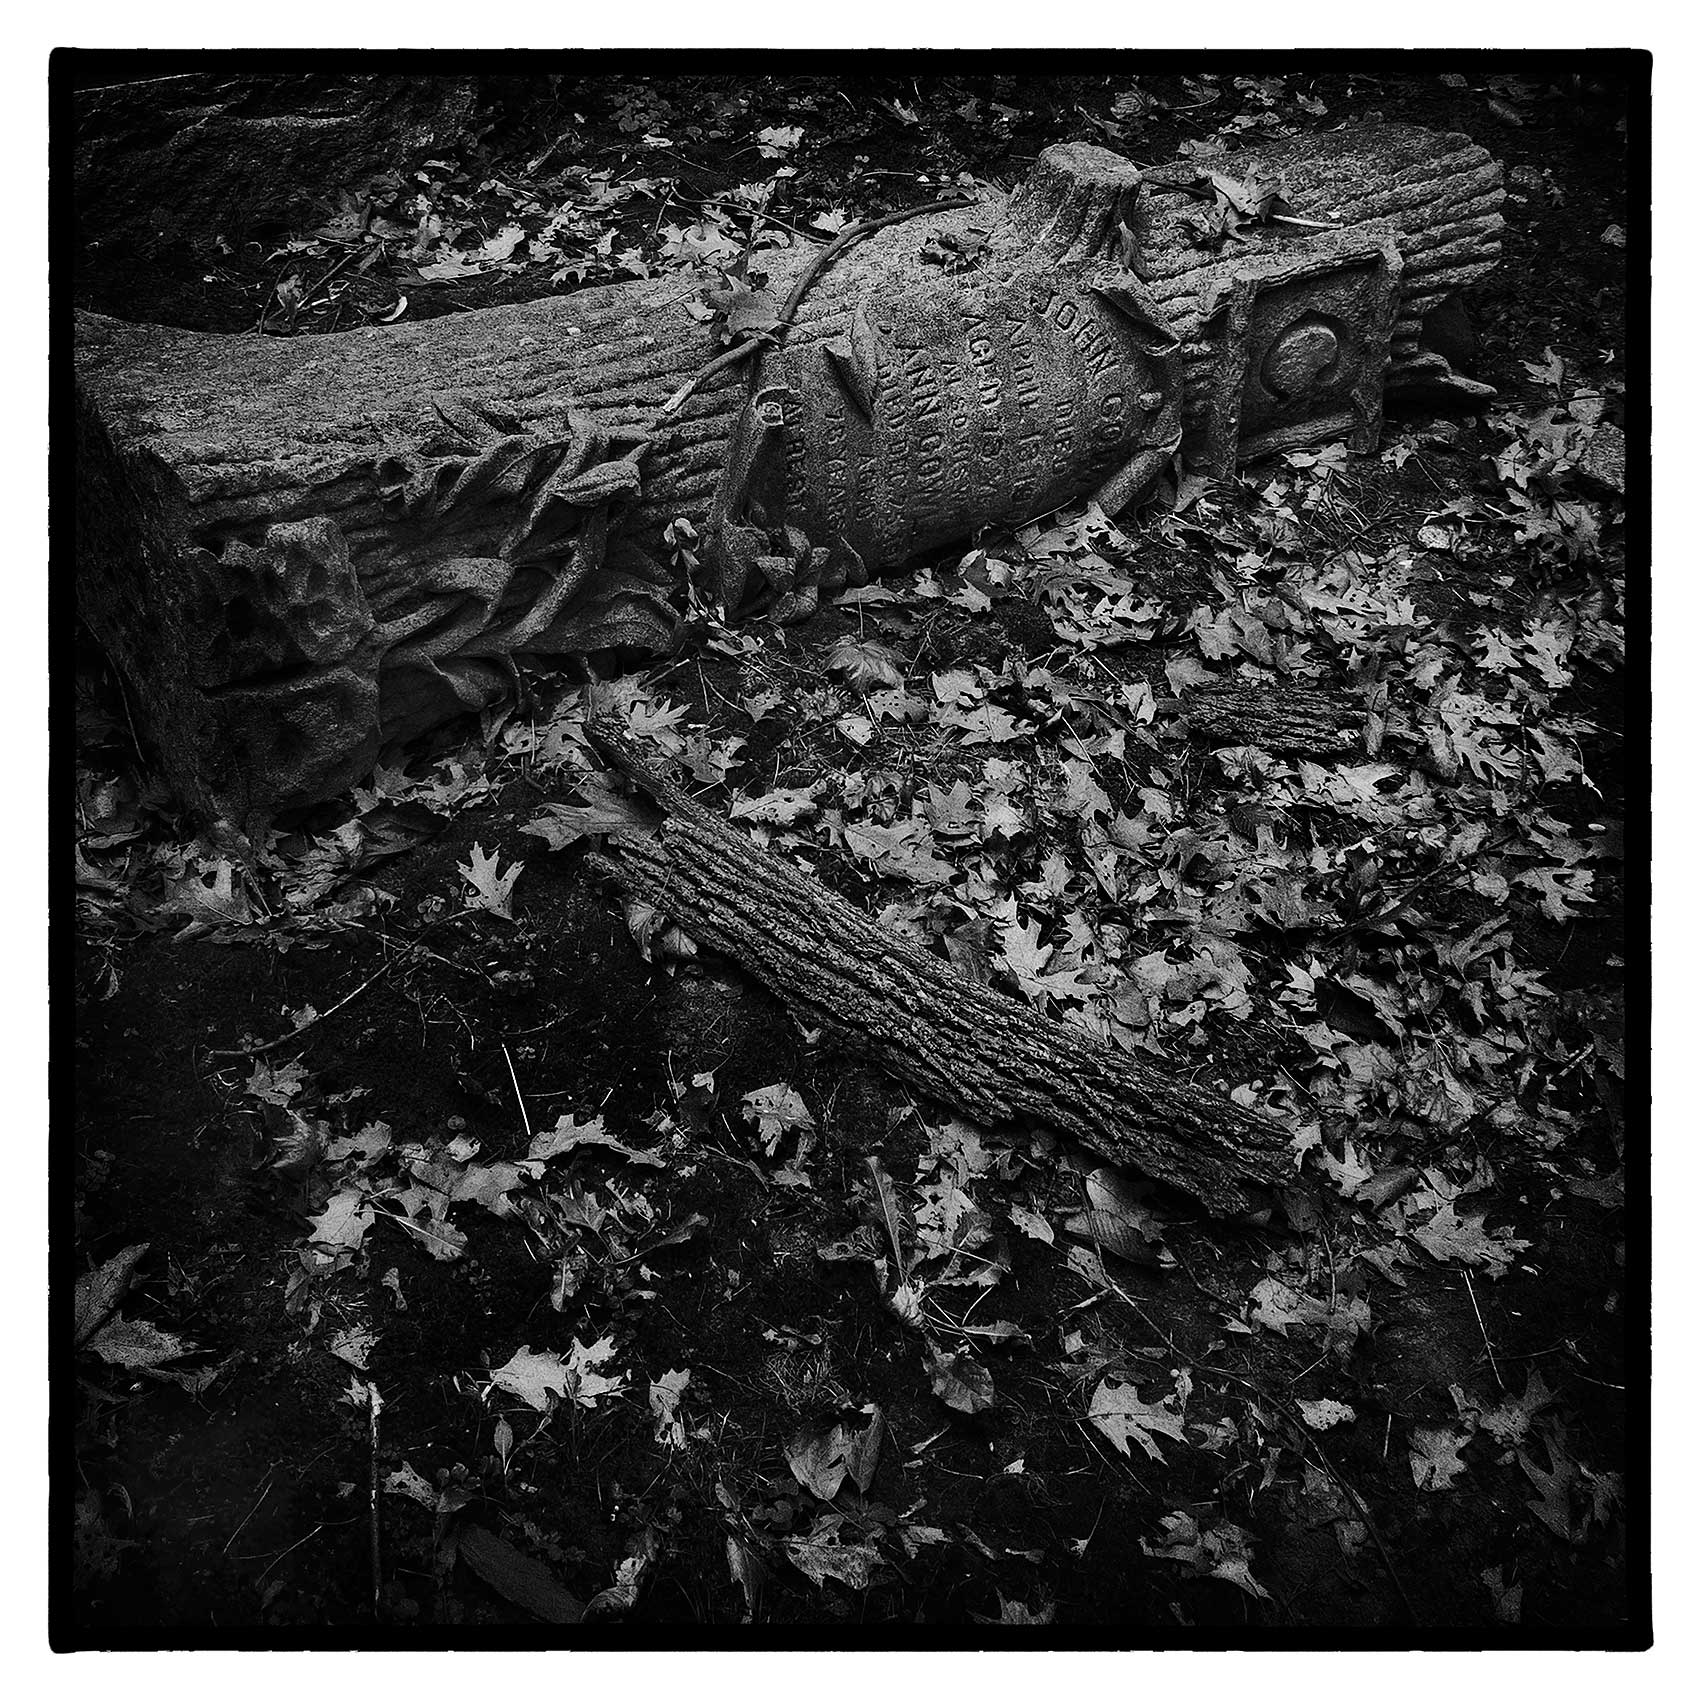 an old fallen stone oak tree headstone lays in St. James Cemetery in Toronto 